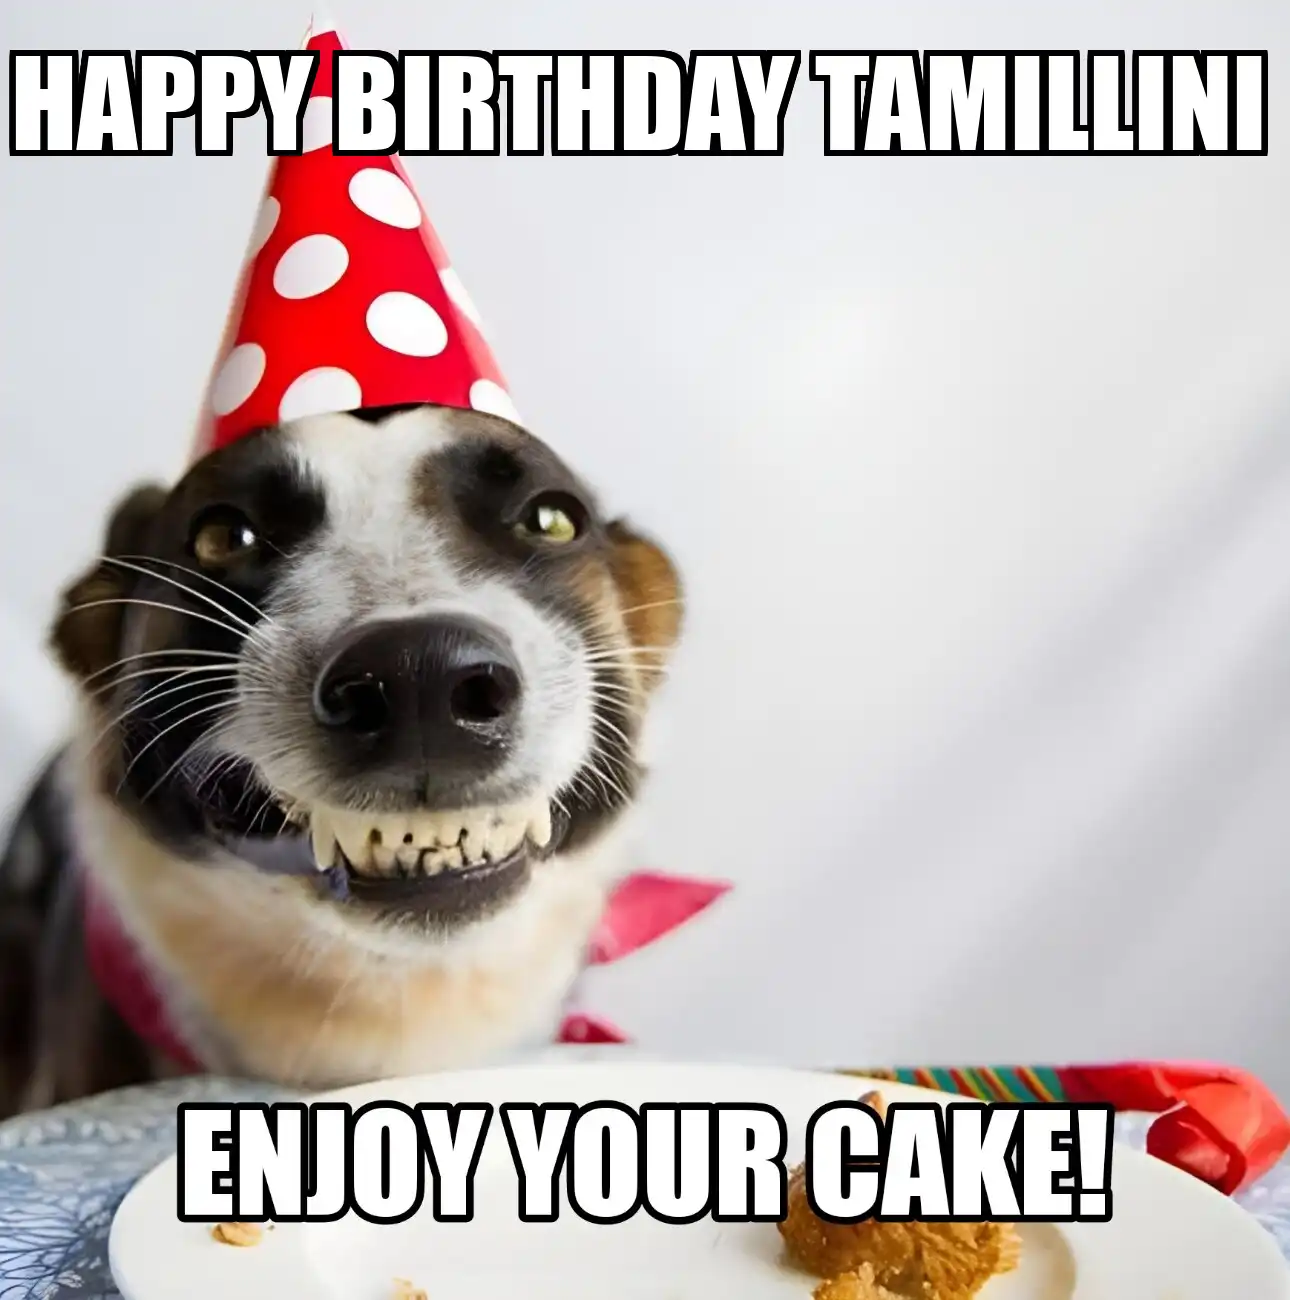 Happy Birthday Tamillini Enjoy Your Cake Dog Meme